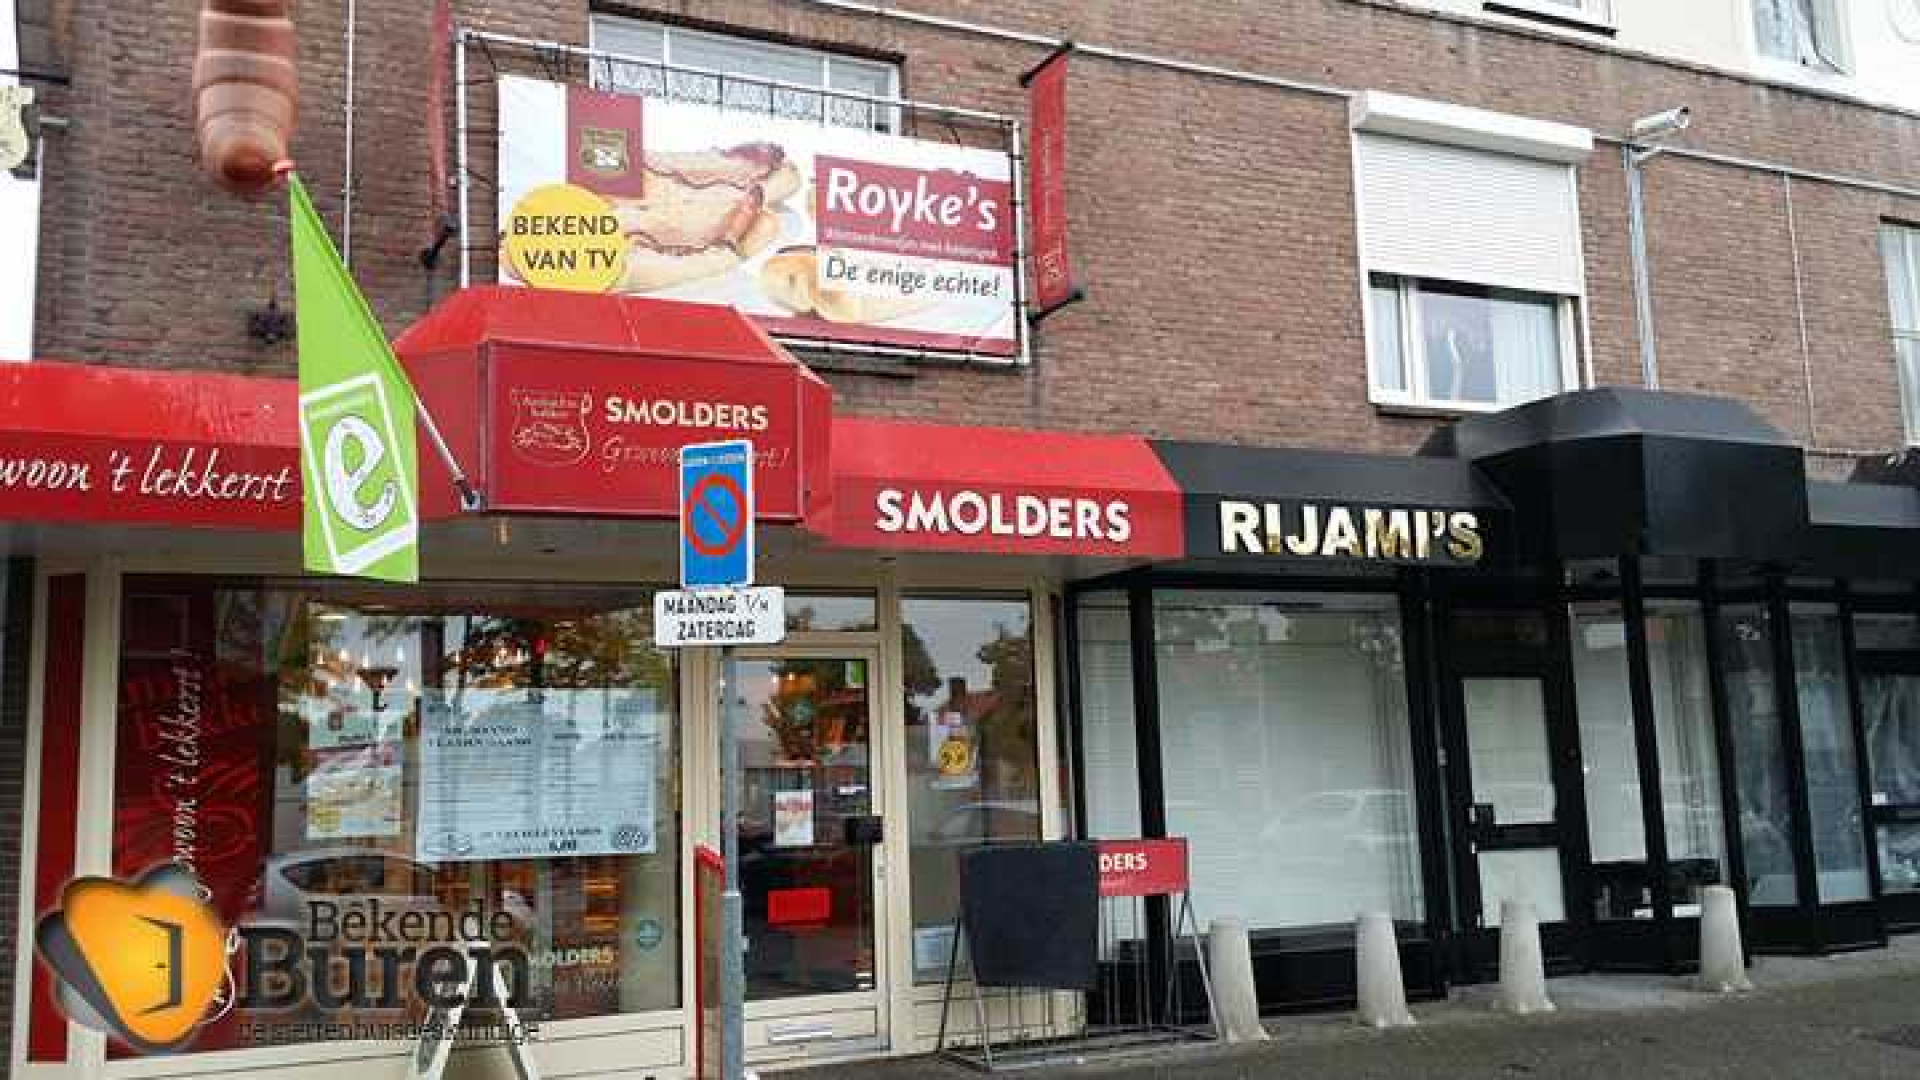 Roy Donders verdient aan verkoop van de worstenbroodjes. Hier het bewijs. Zie foto's